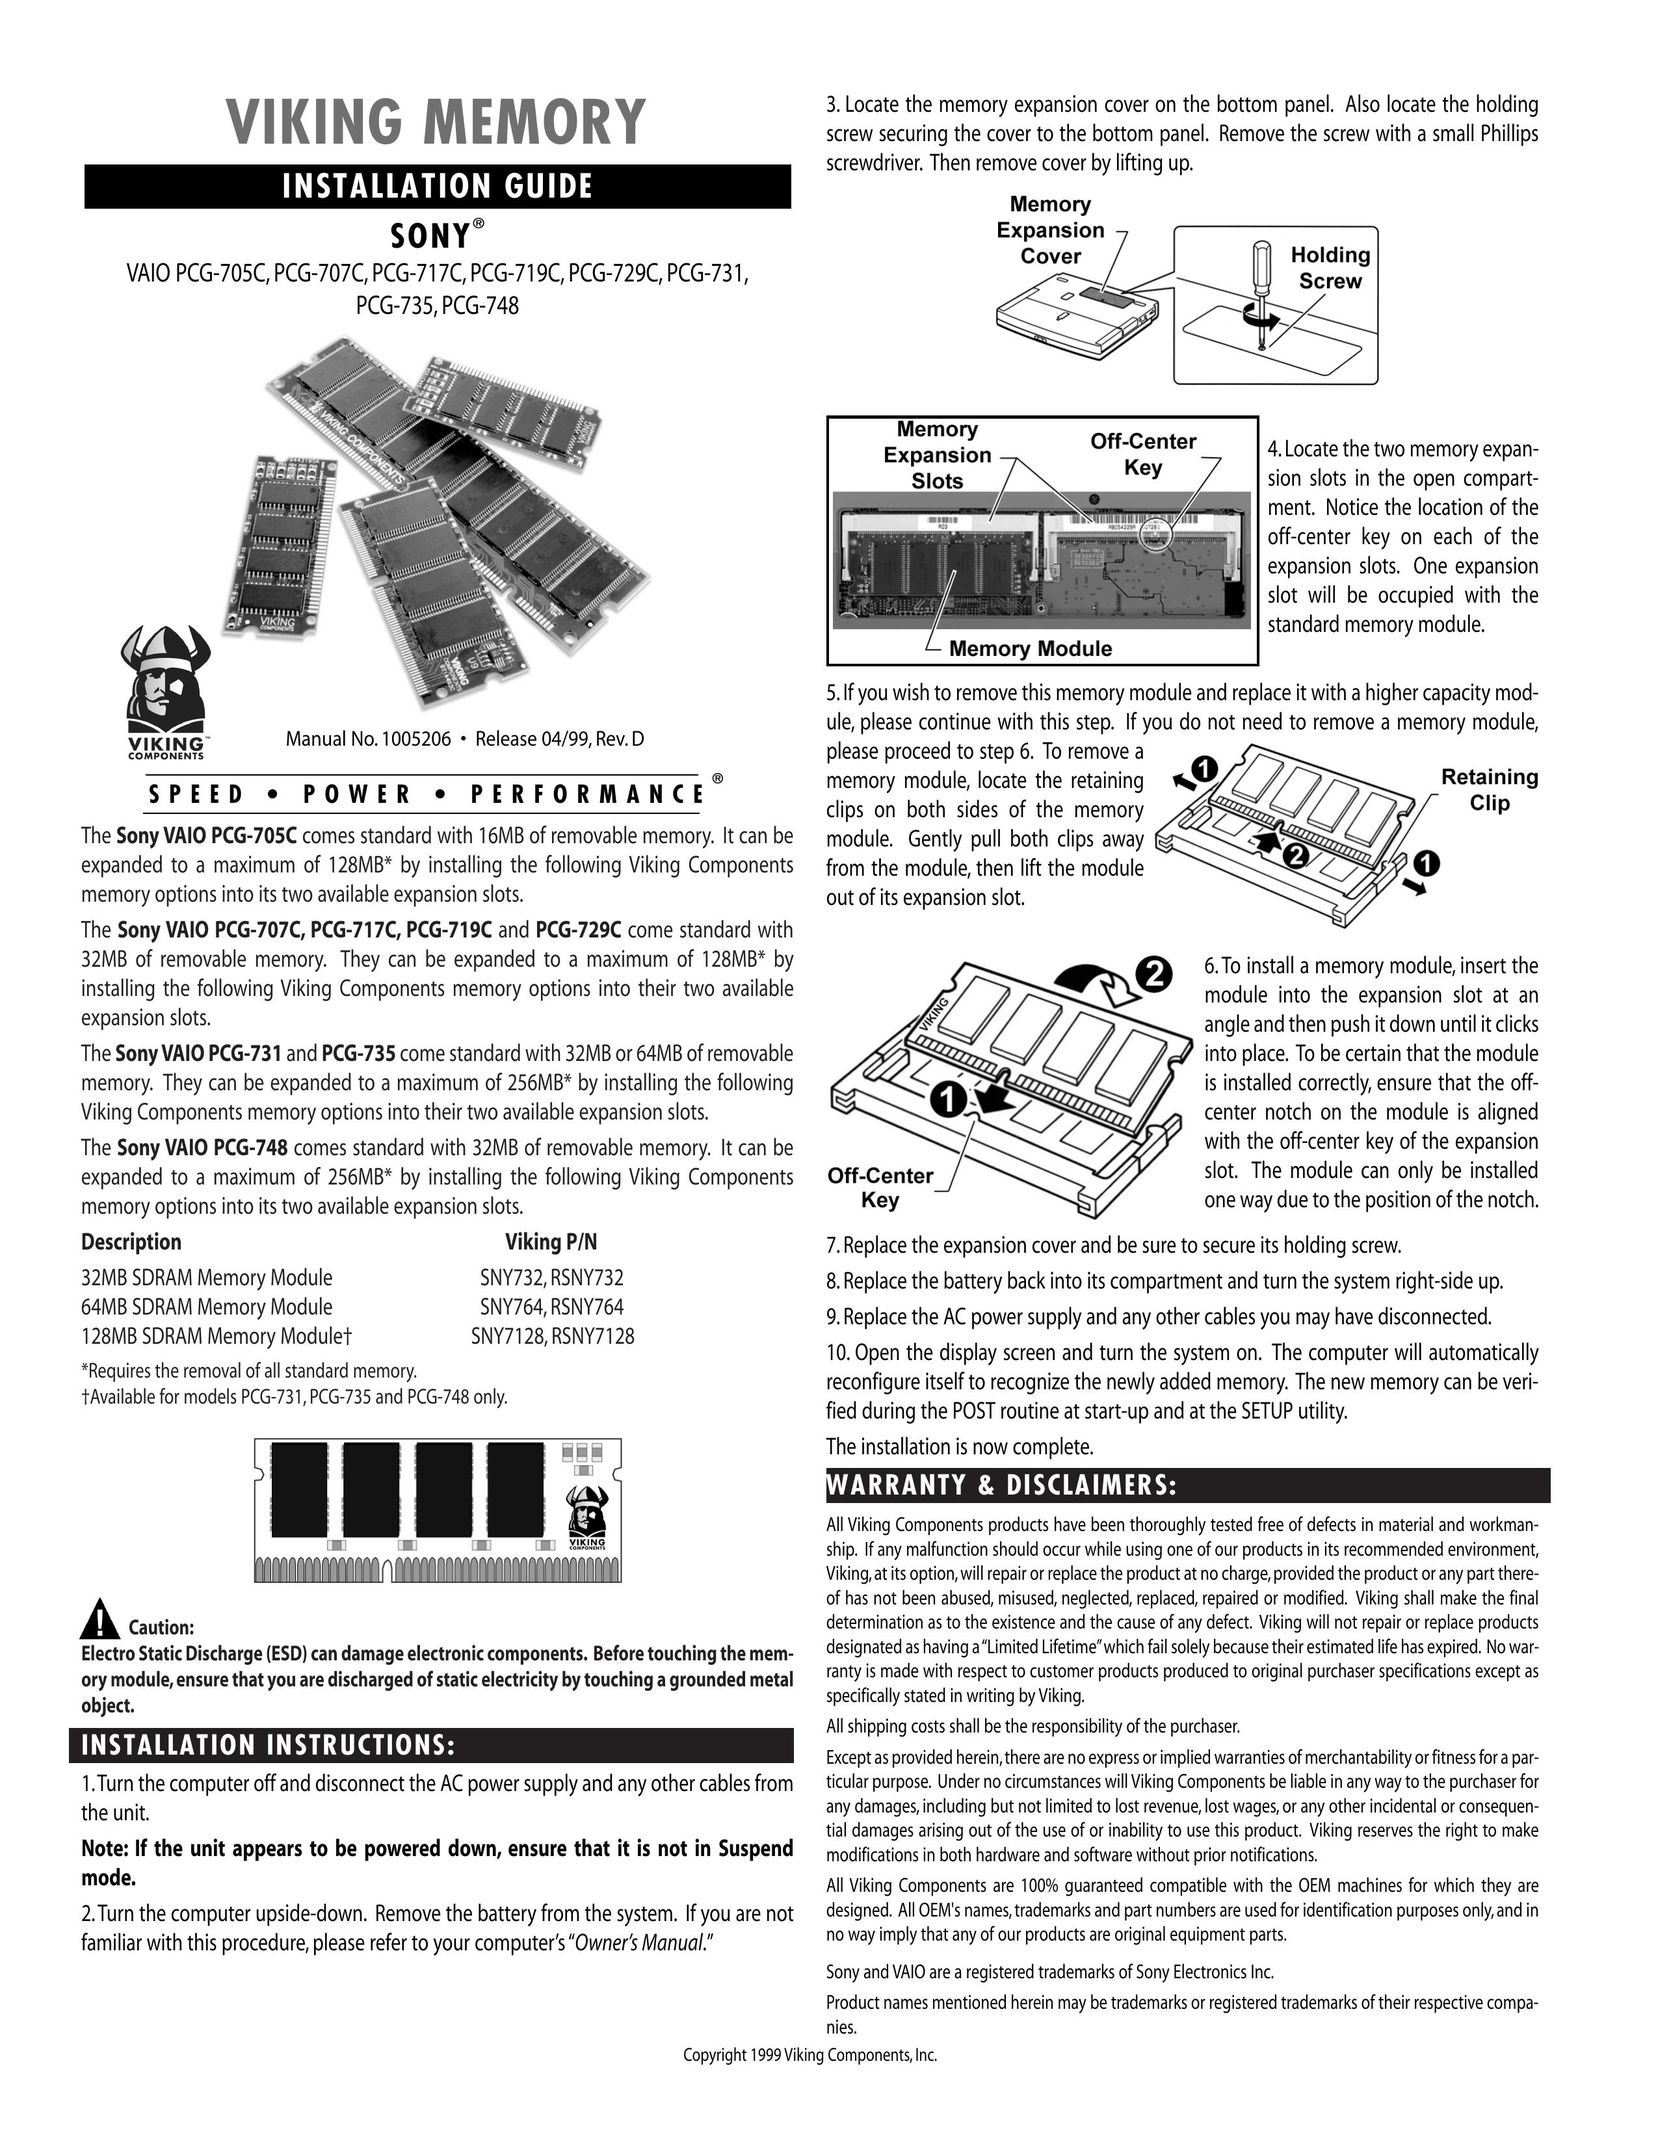 Viking InterWorks PCG-729C Personal Computer User Manual